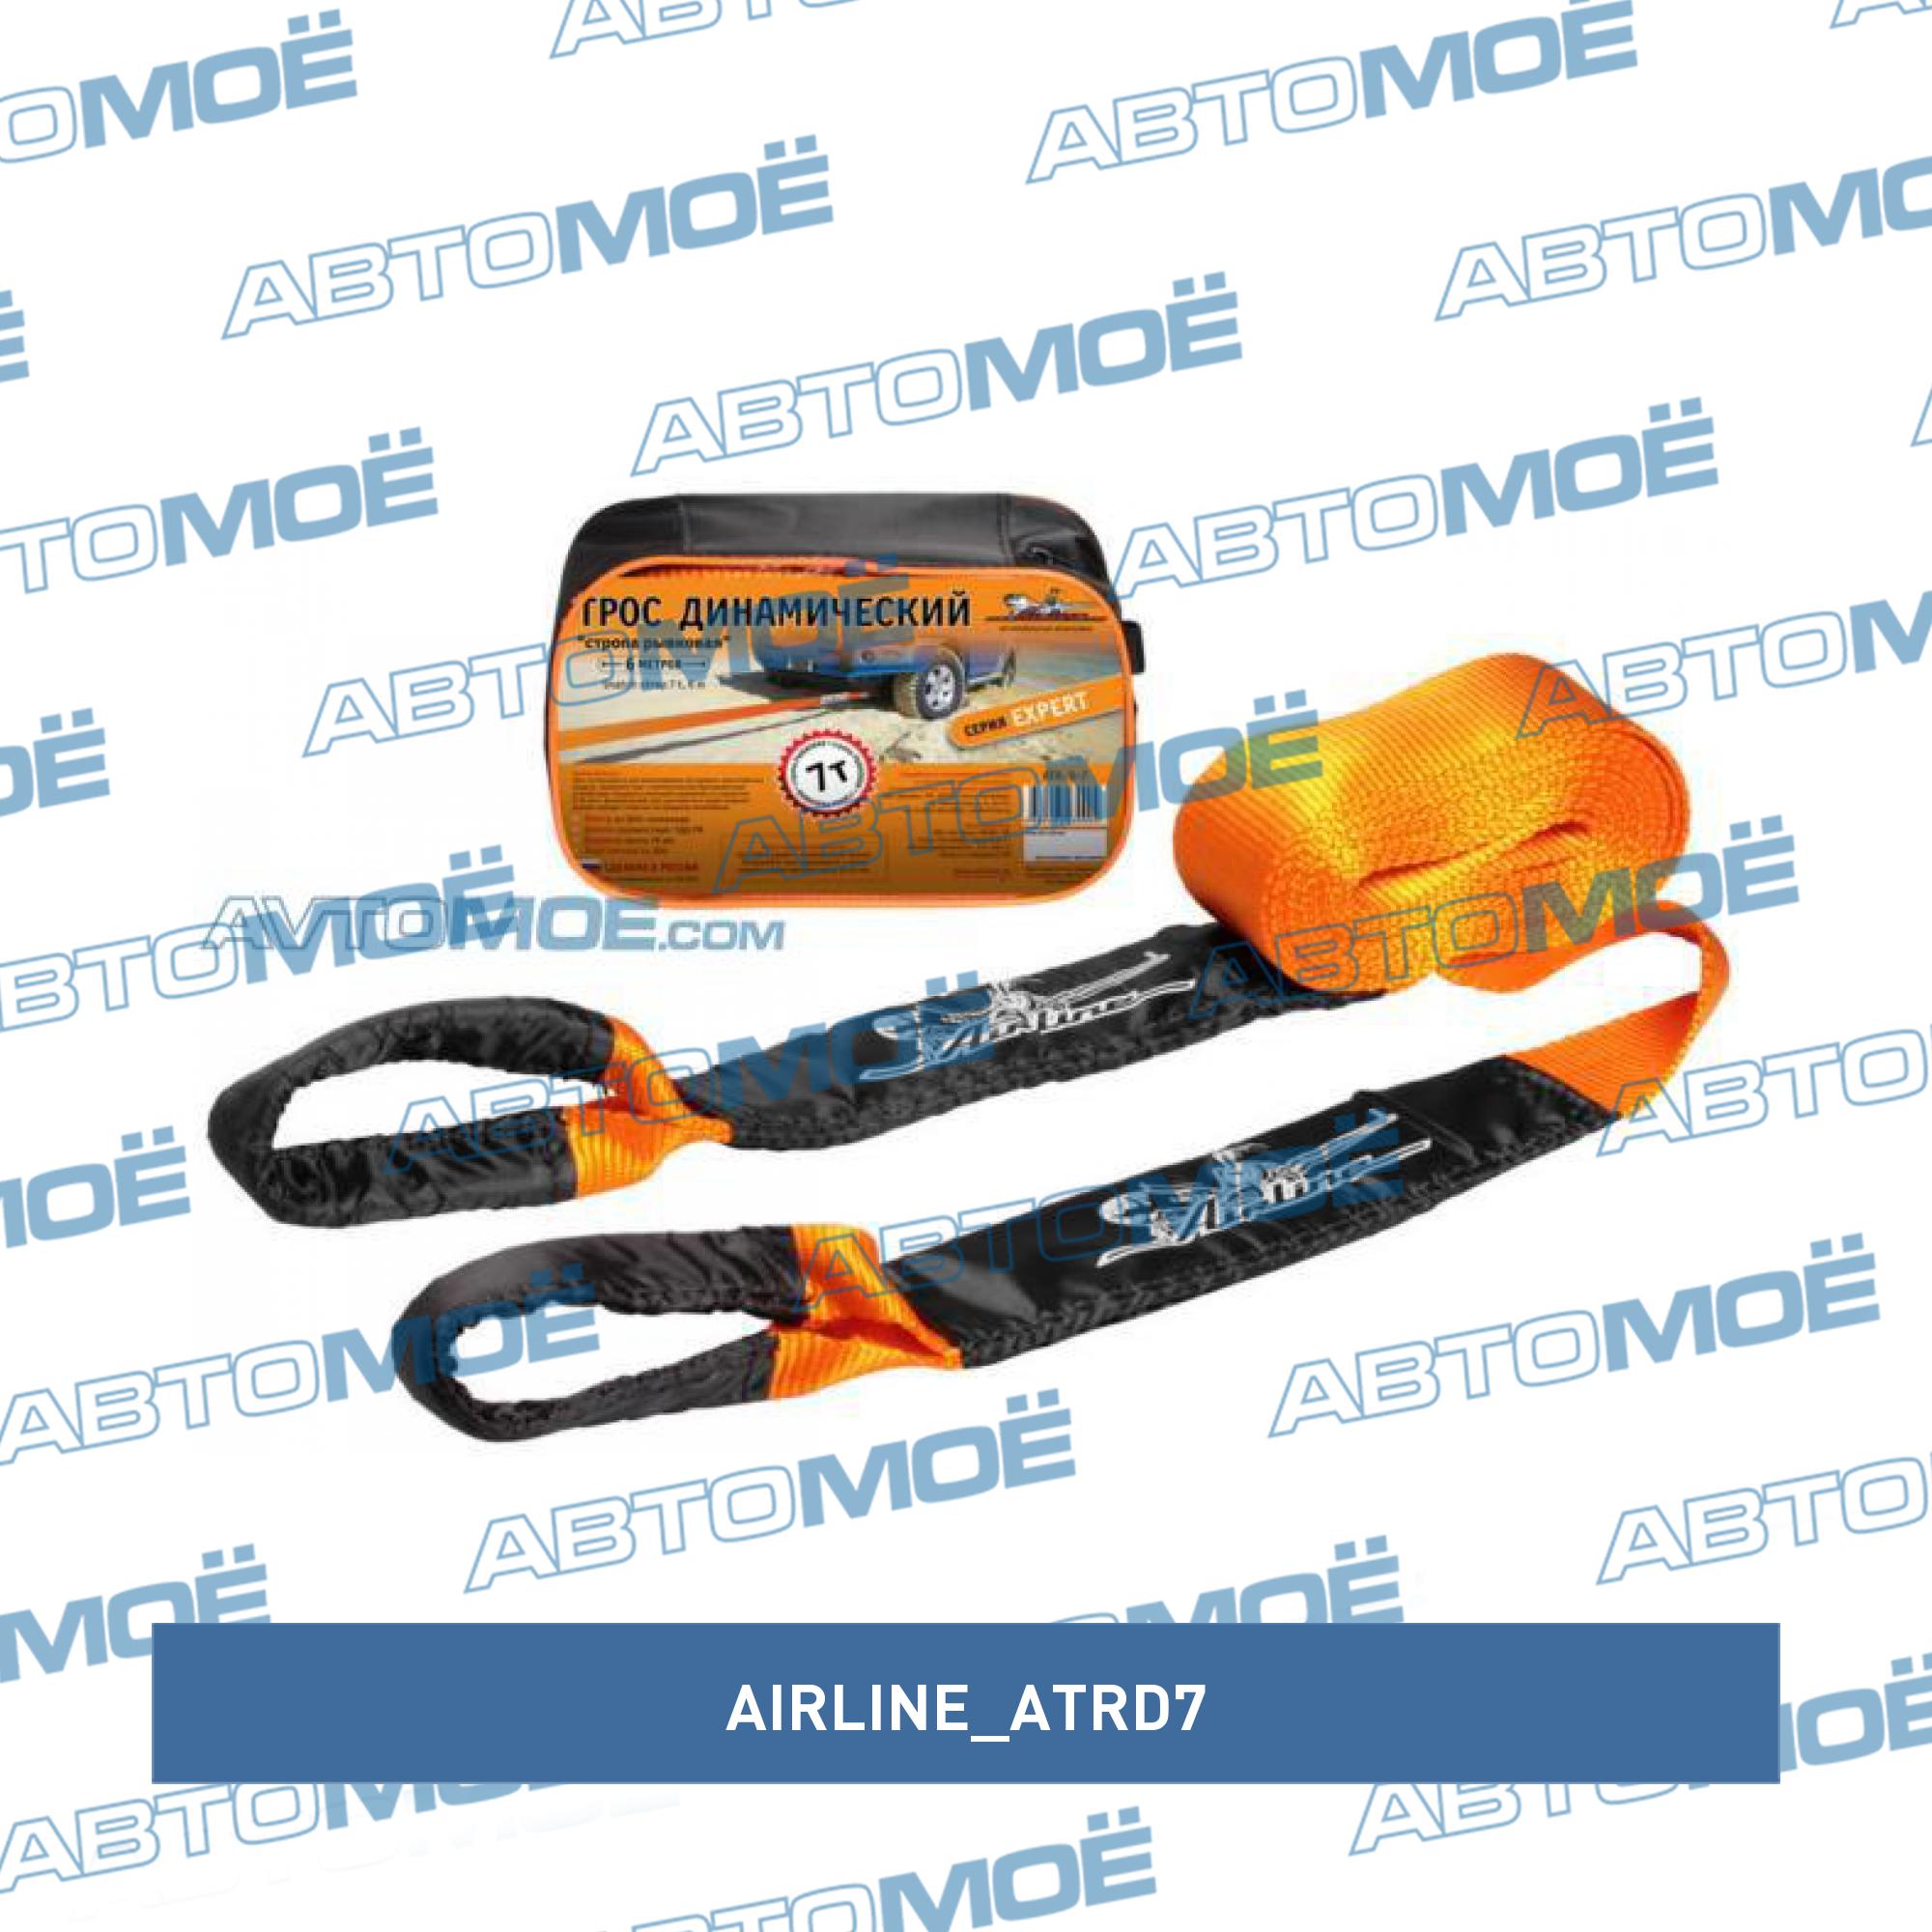 Трос динамический 7 т, 6 м + сумка (стропа рывковая) AIRLINE ATRD7